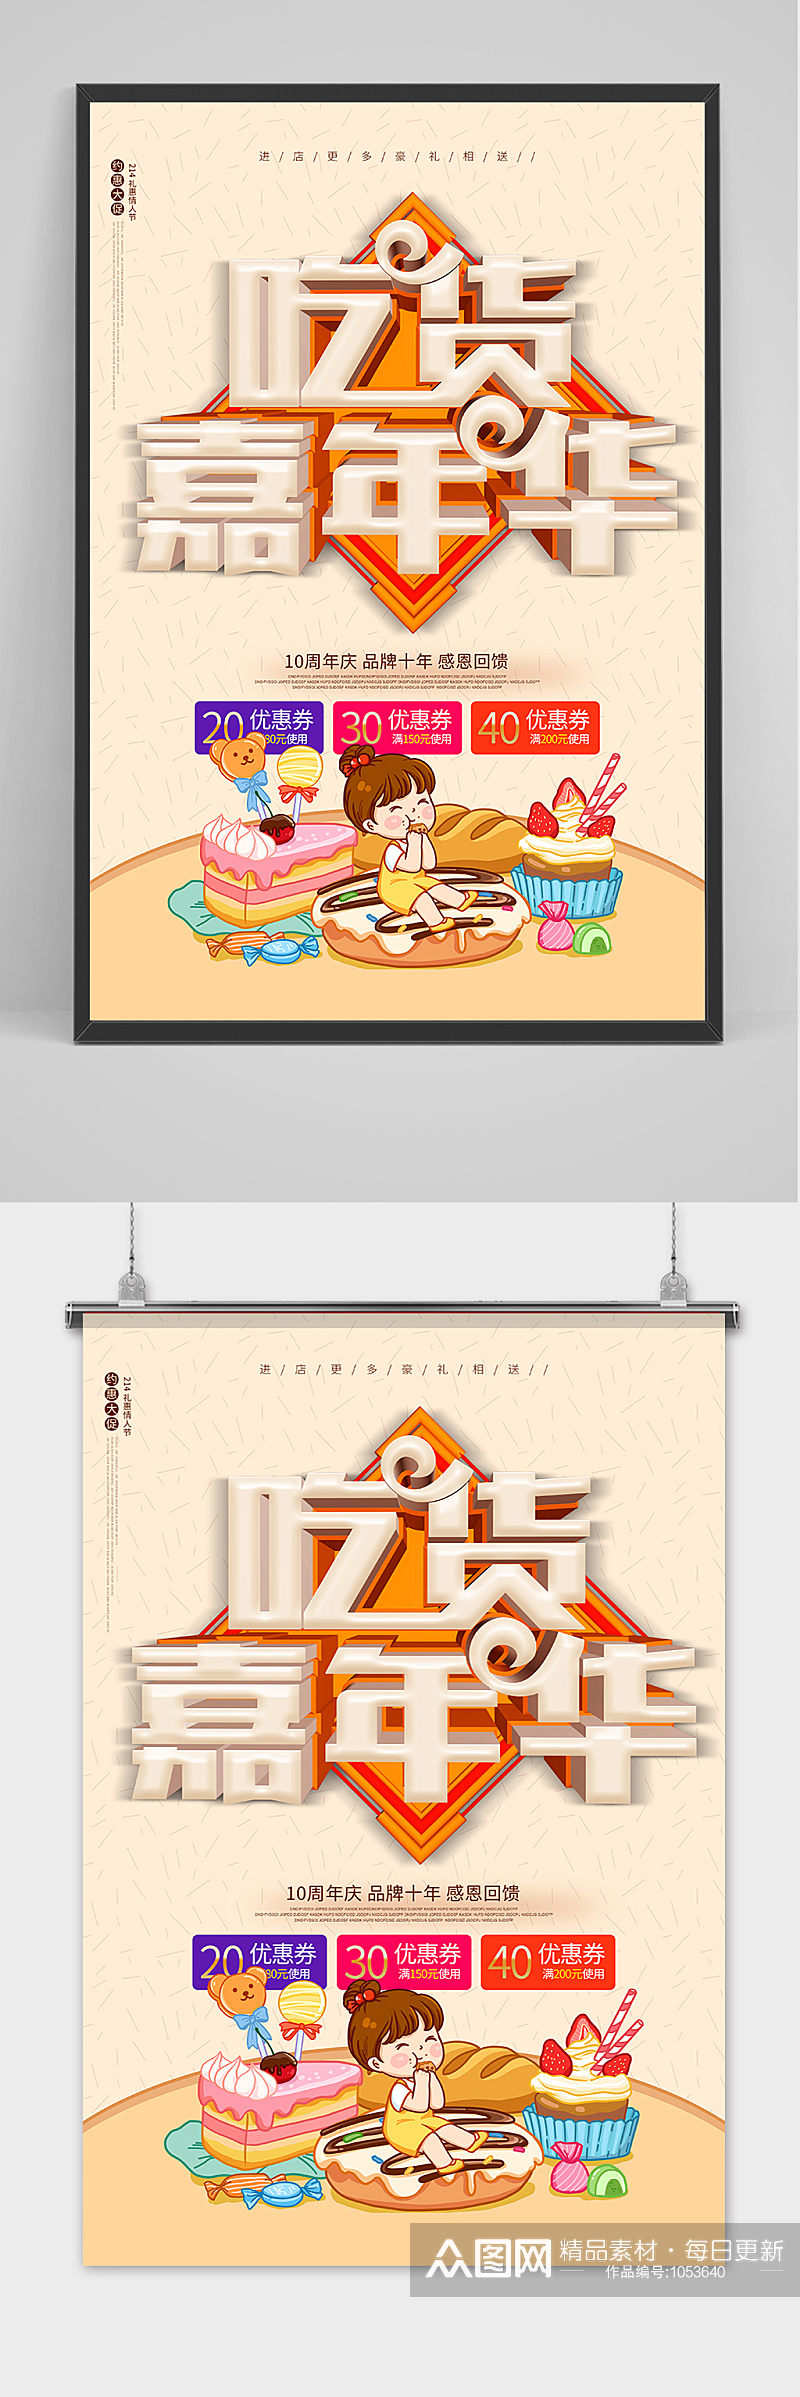 卡通吃货嘉年华餐饮宣传海报素材